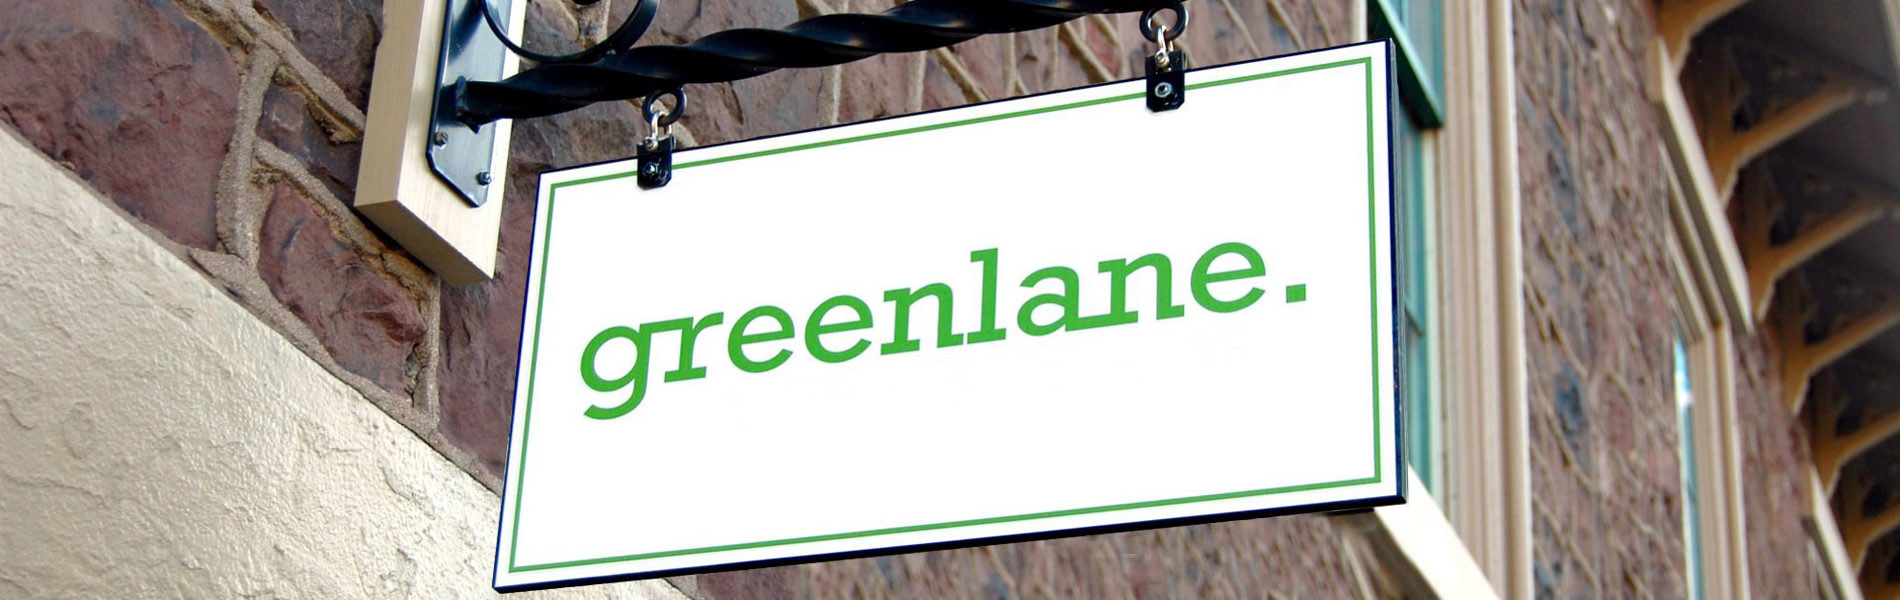 Digital Marketing & SEO Agency | Greenlane